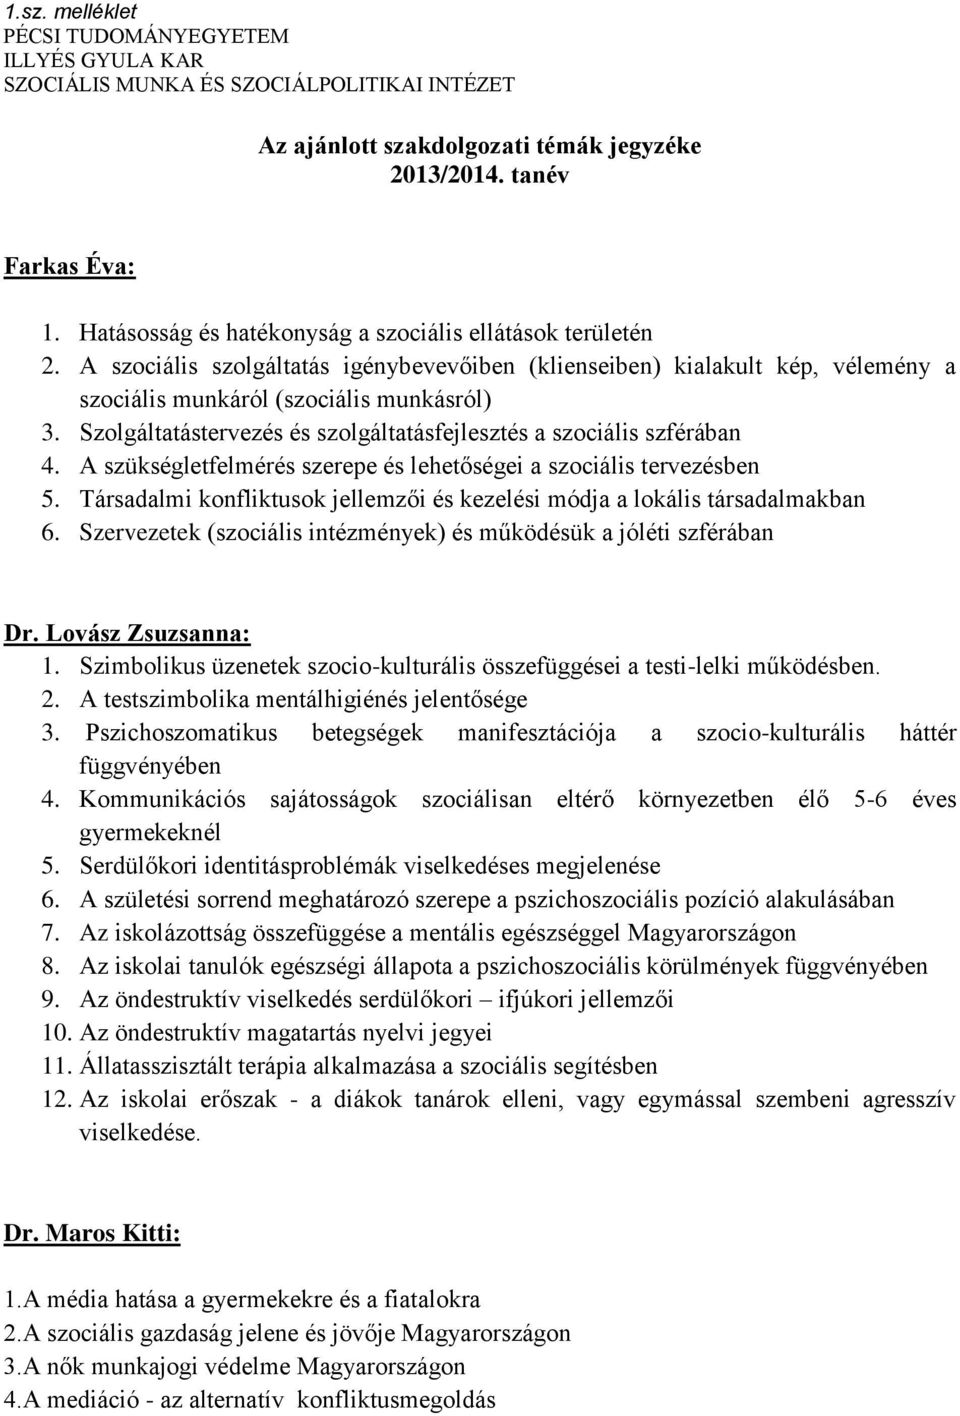 Szakdolgozati szabályzat - PDF Ingyenes letöltés